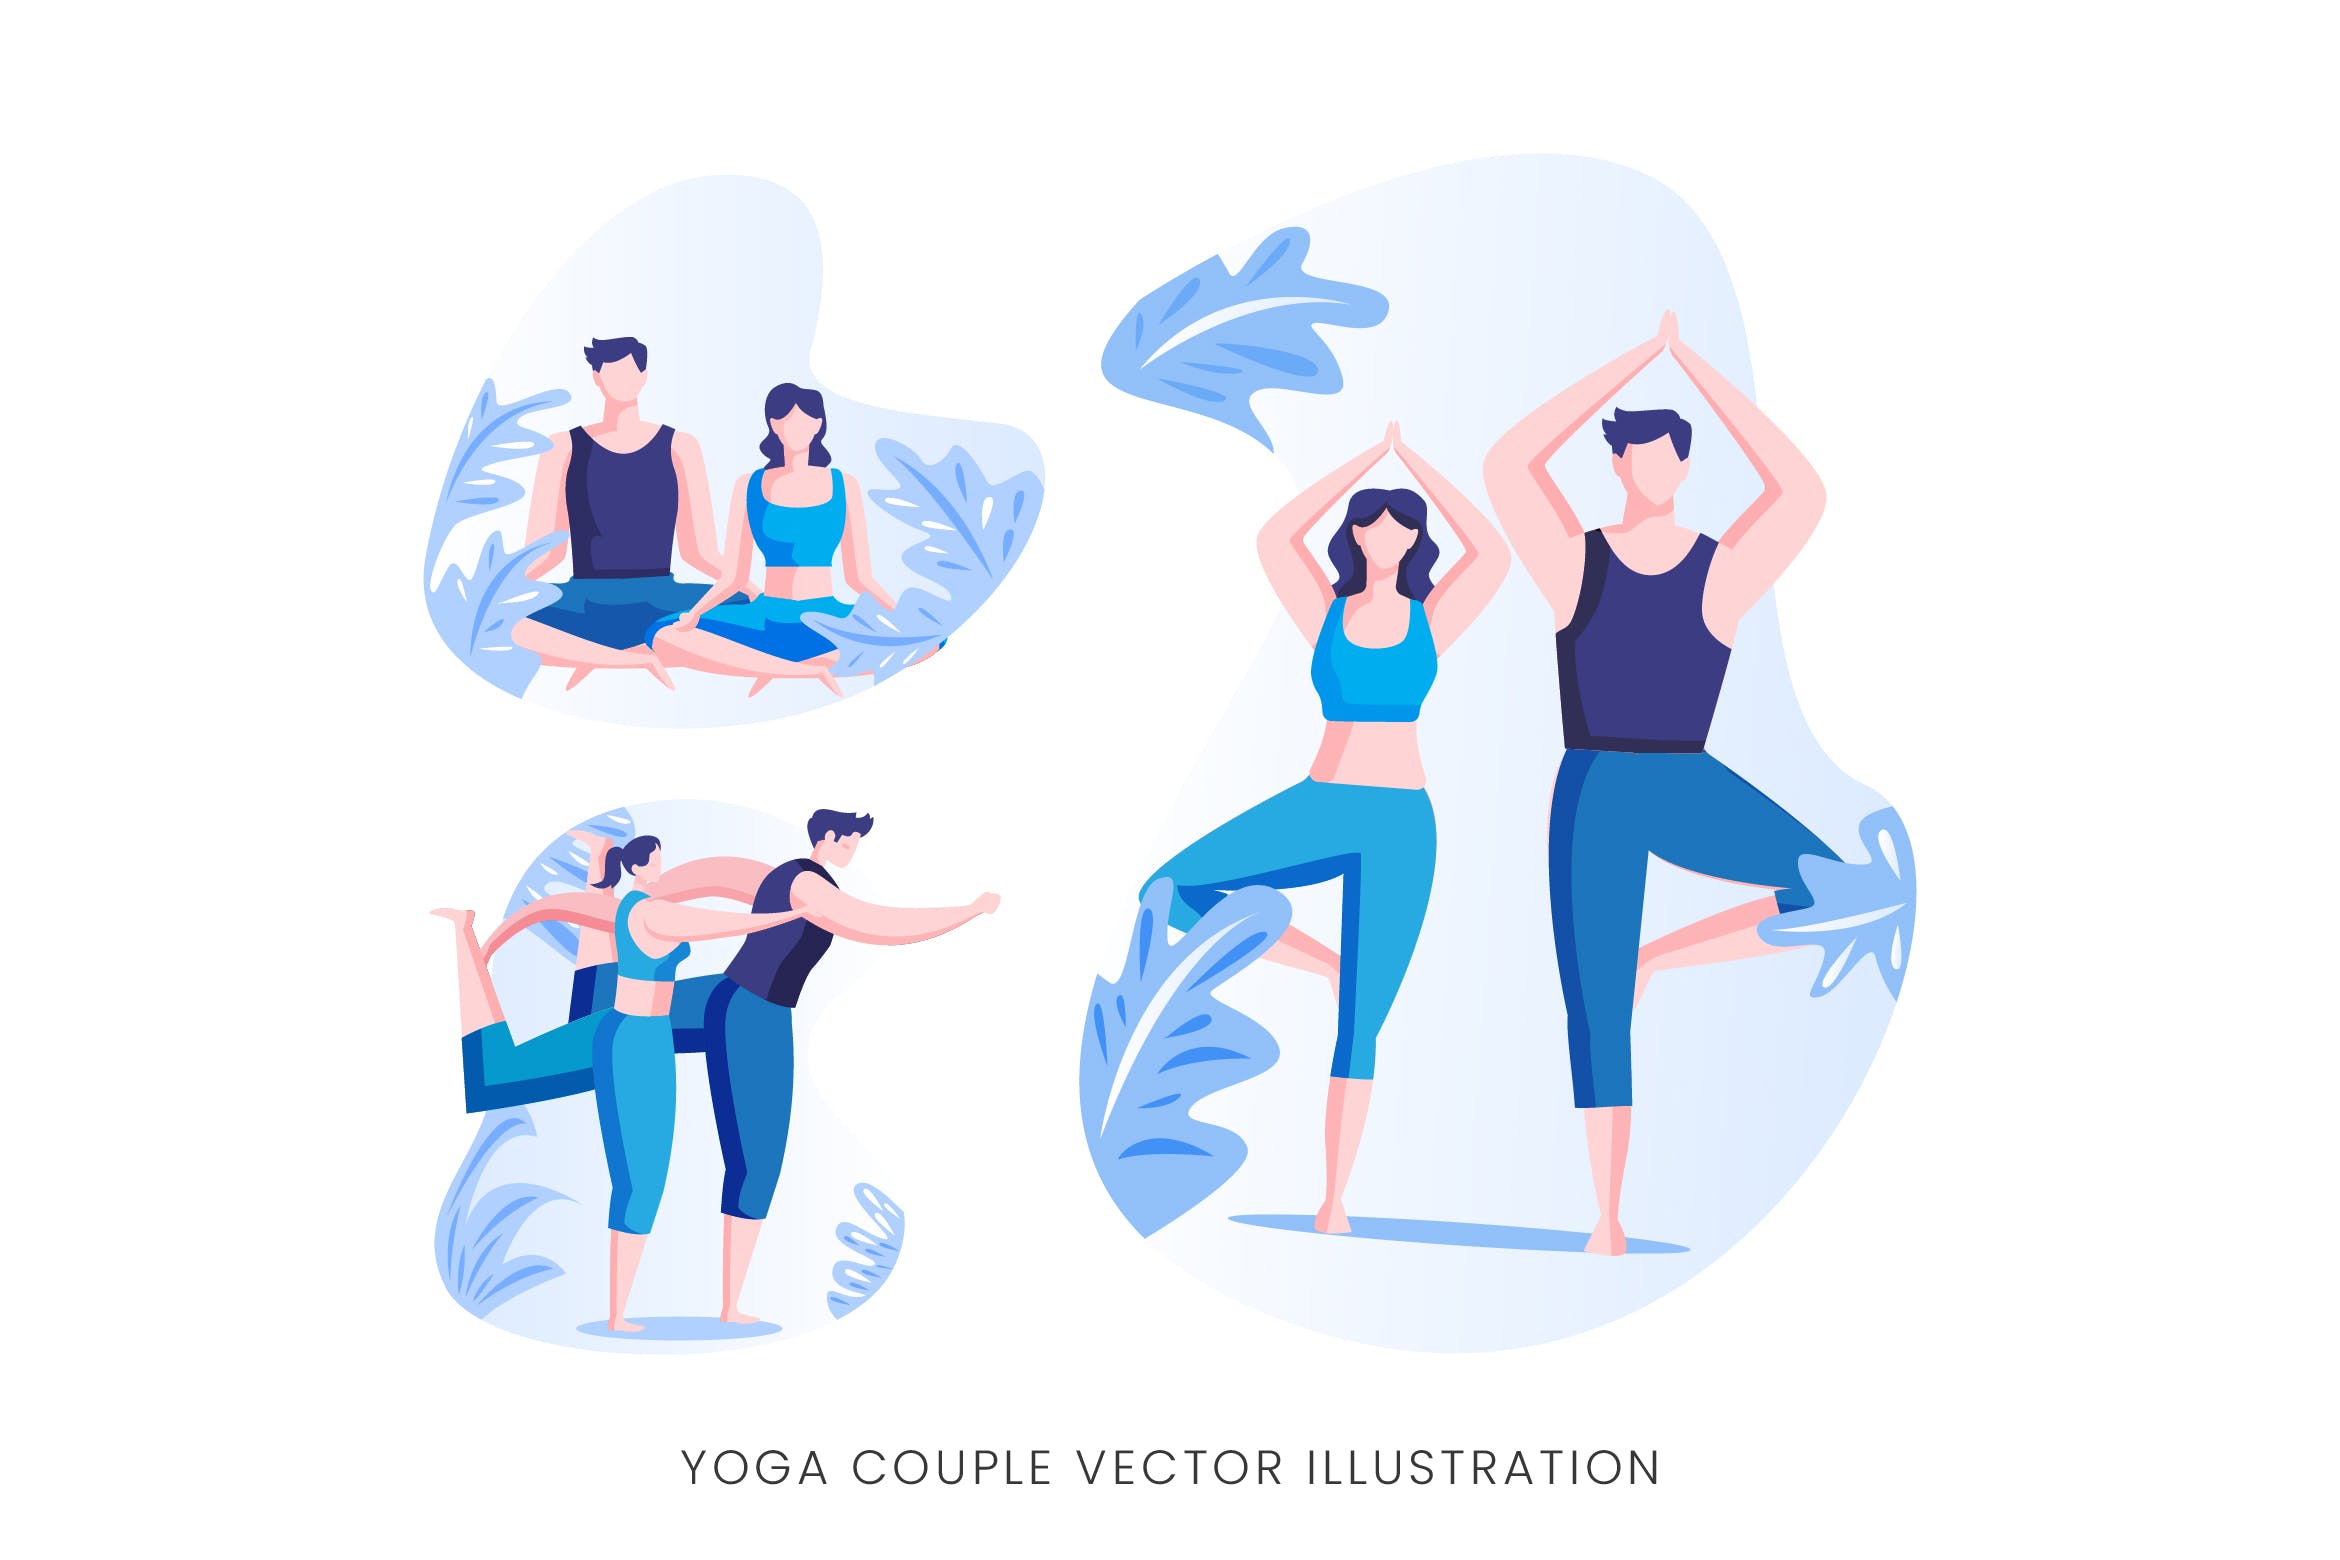 瑜珈情侣人物形象矢量手绘蚂蚁素材精选设计素材 Yoga Couple Vector Character Set插图